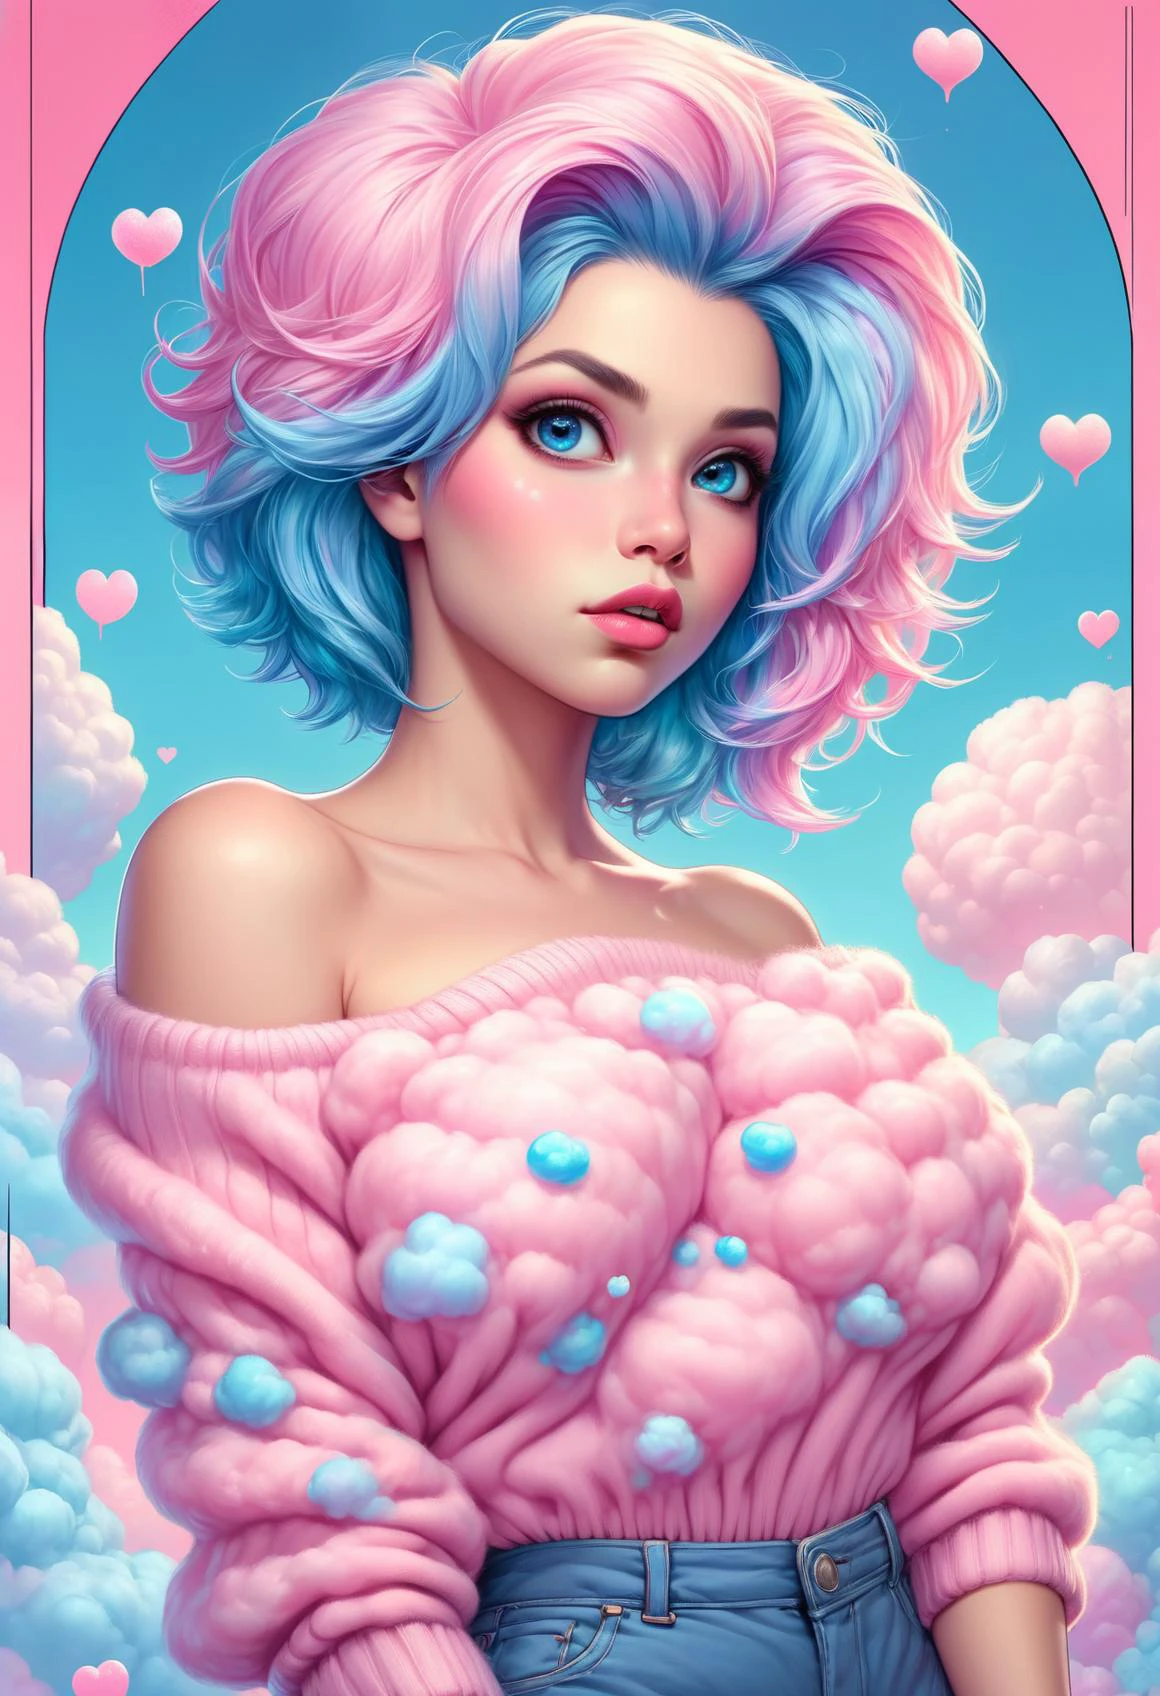 棉花糖, 一個美麗的女人俯身的人物概念藝術, 粉紅色棉花糖毛衣從肩膀掉下來, 情人节,  劈裂, 極度性感, 誘人的, 虹彩粉紅和藍色的長髮, 甜美的嘴唇, 漫畫藝術, 粗略的彩色草圖
, 豐富多彩的, 精心製作精彩背景,